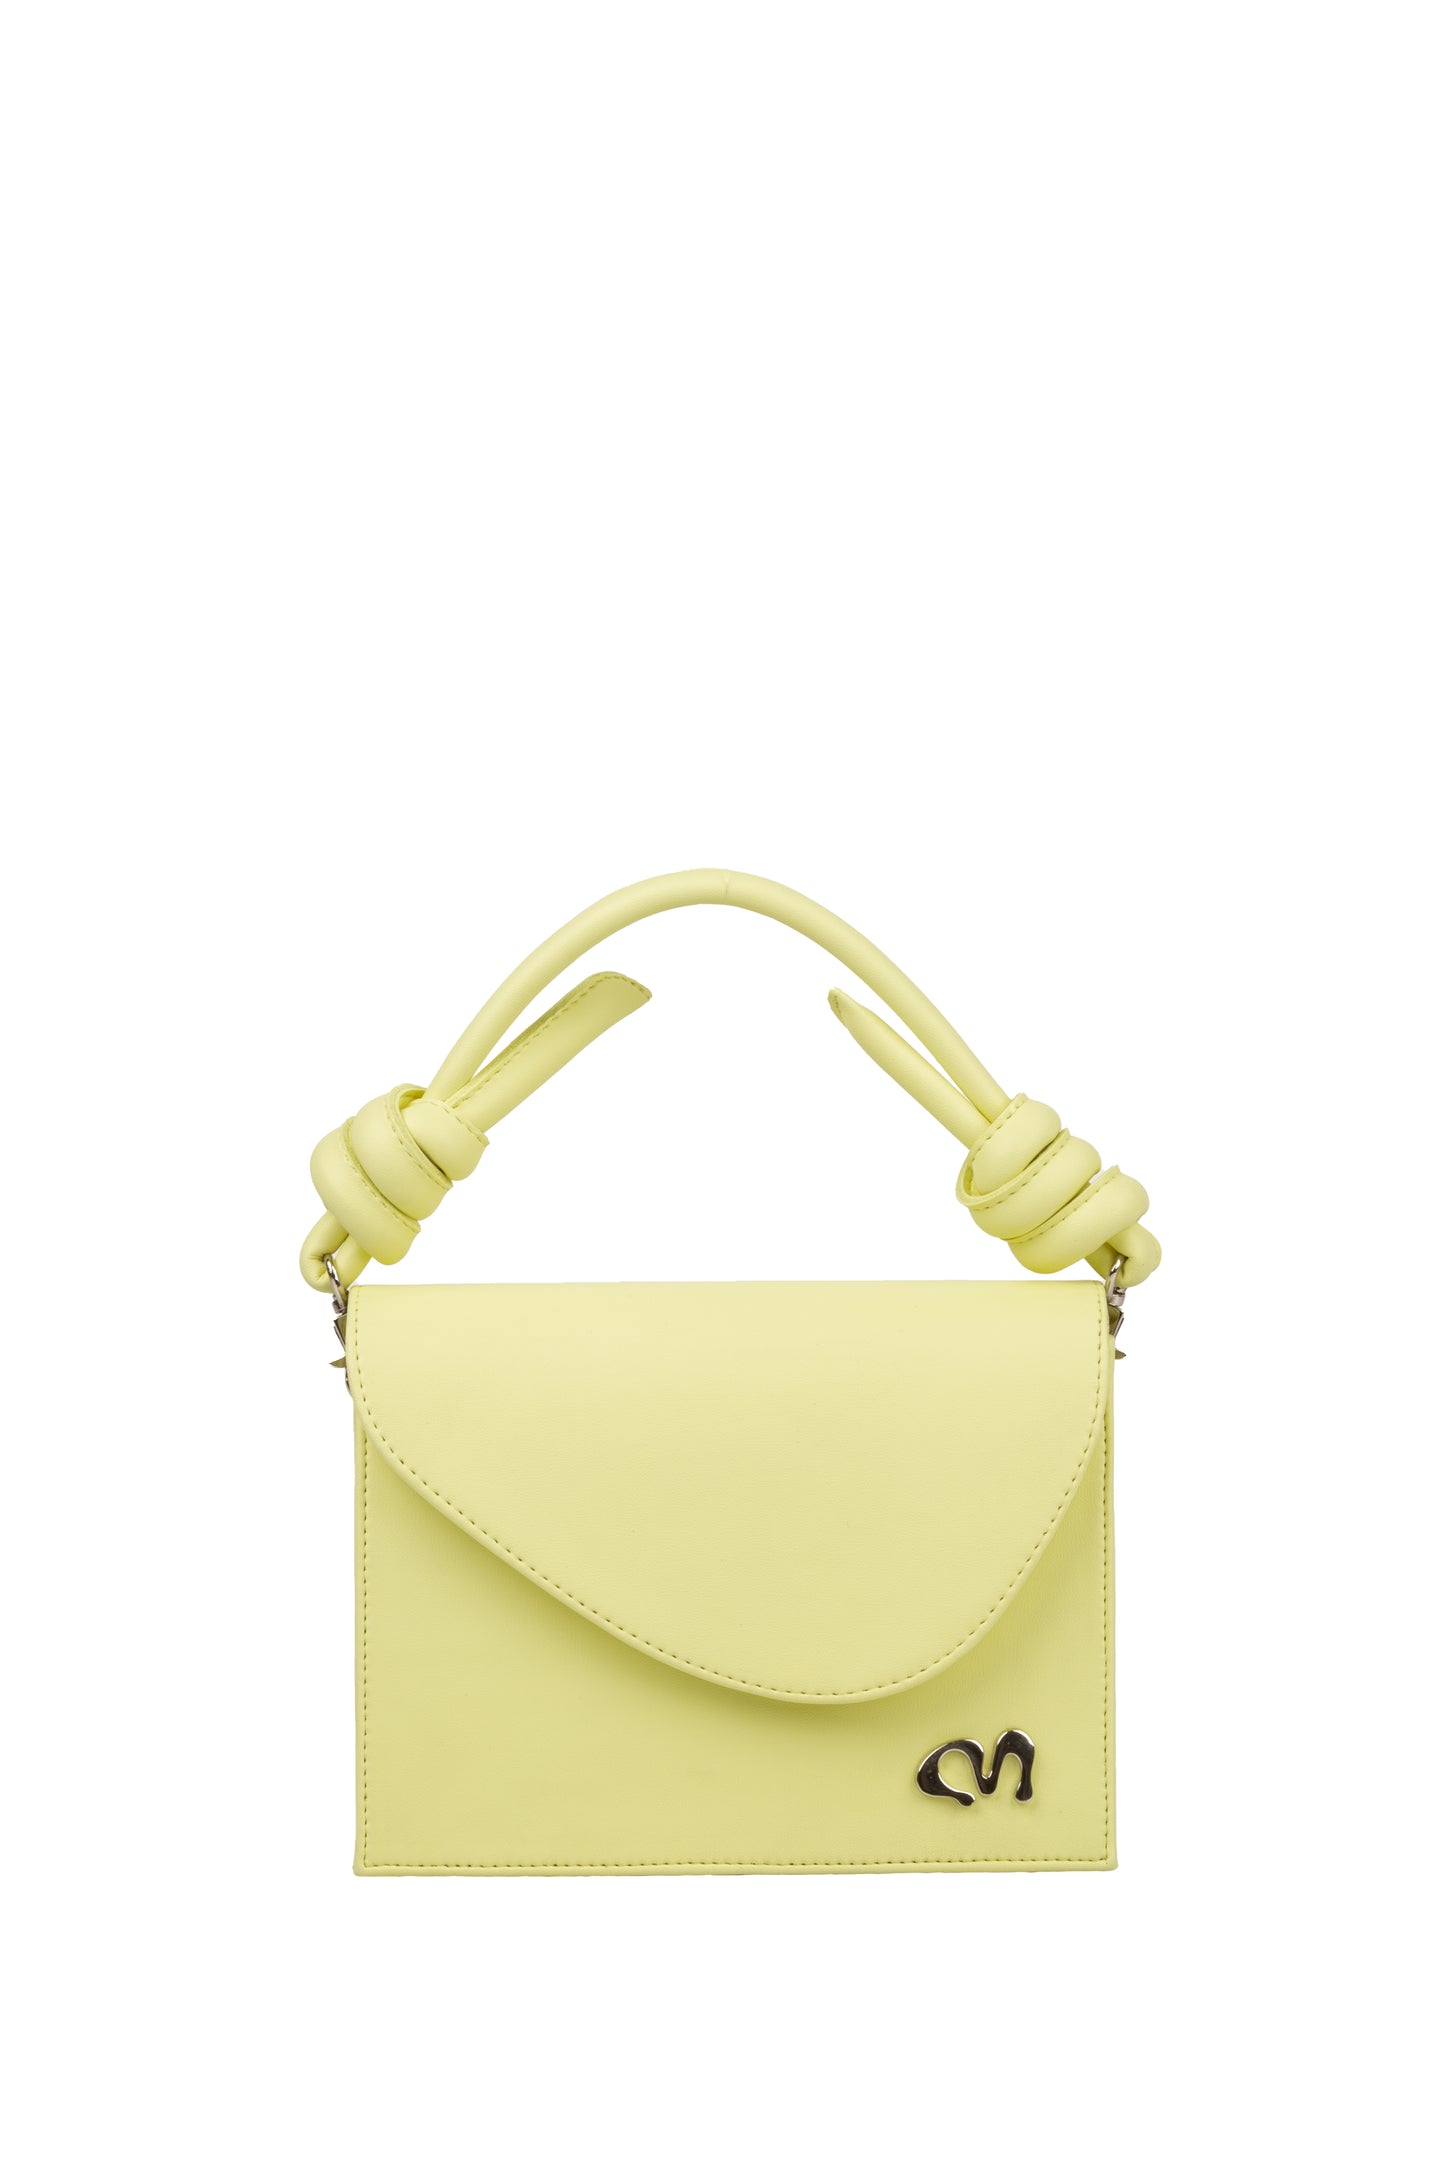 Lemon Yellow Little Bag